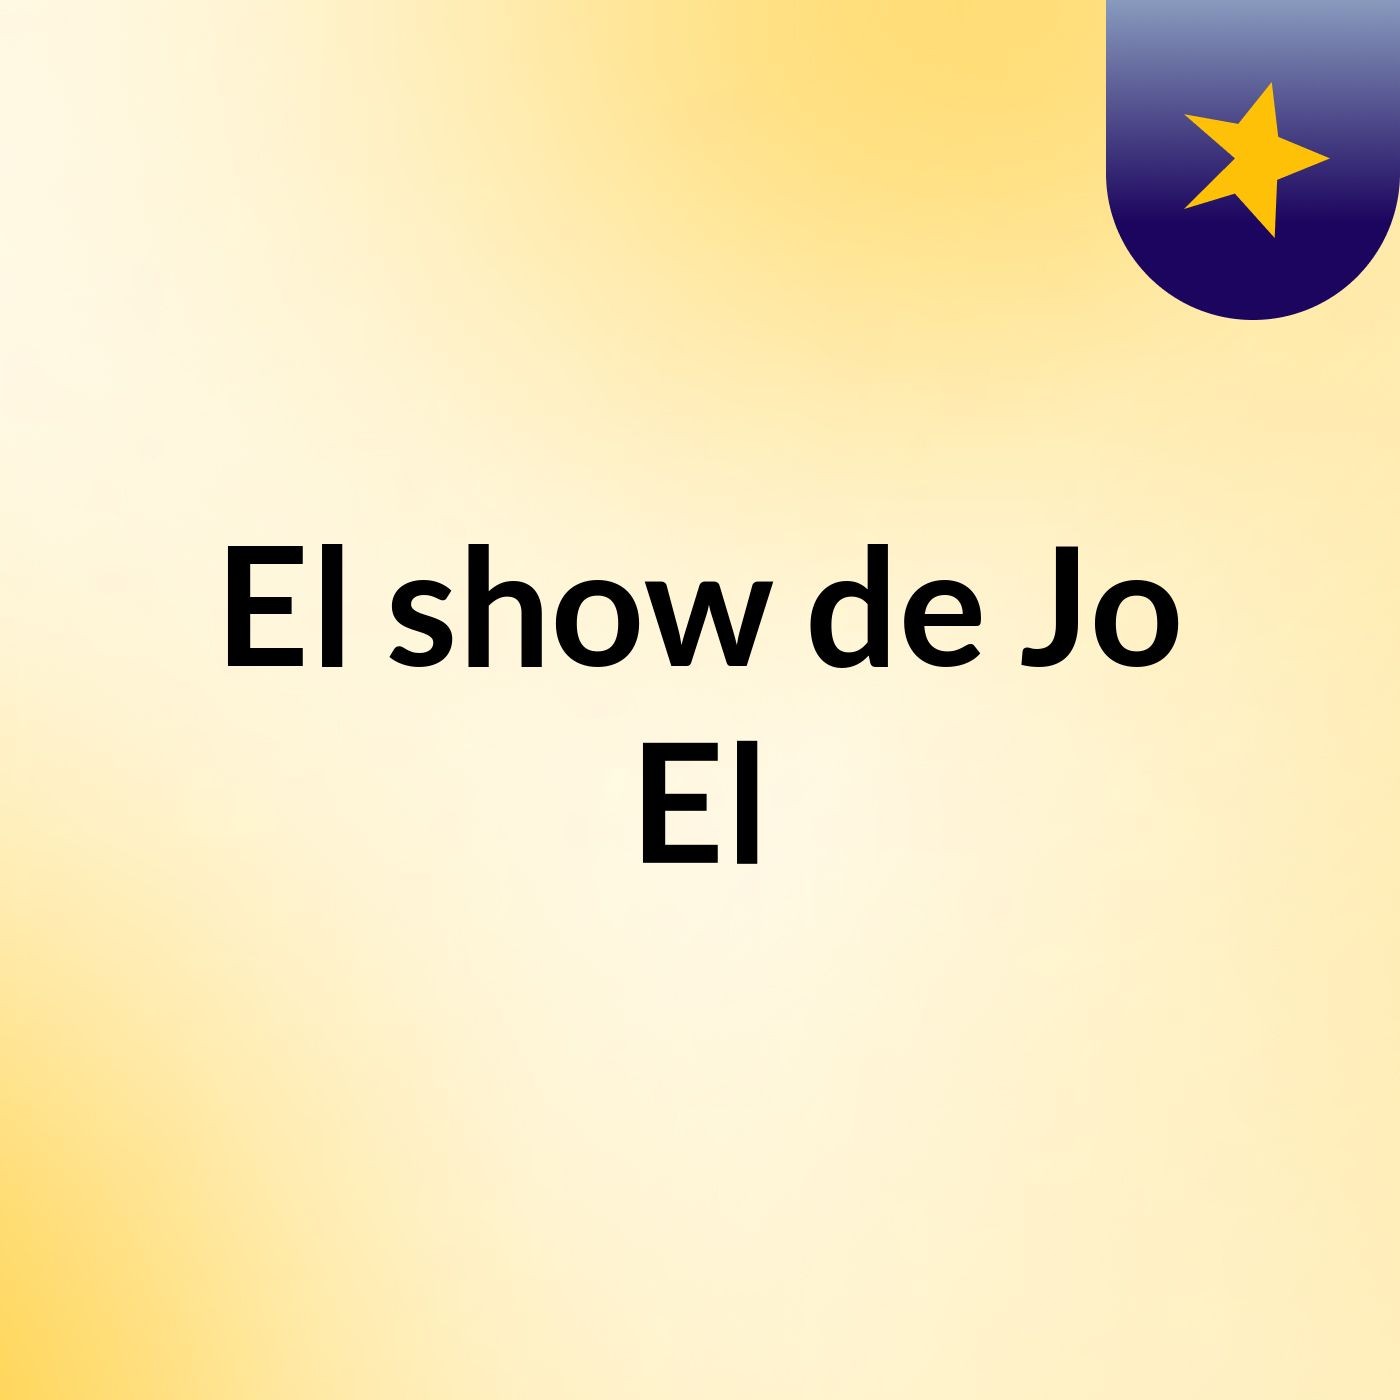 El show de Jo El